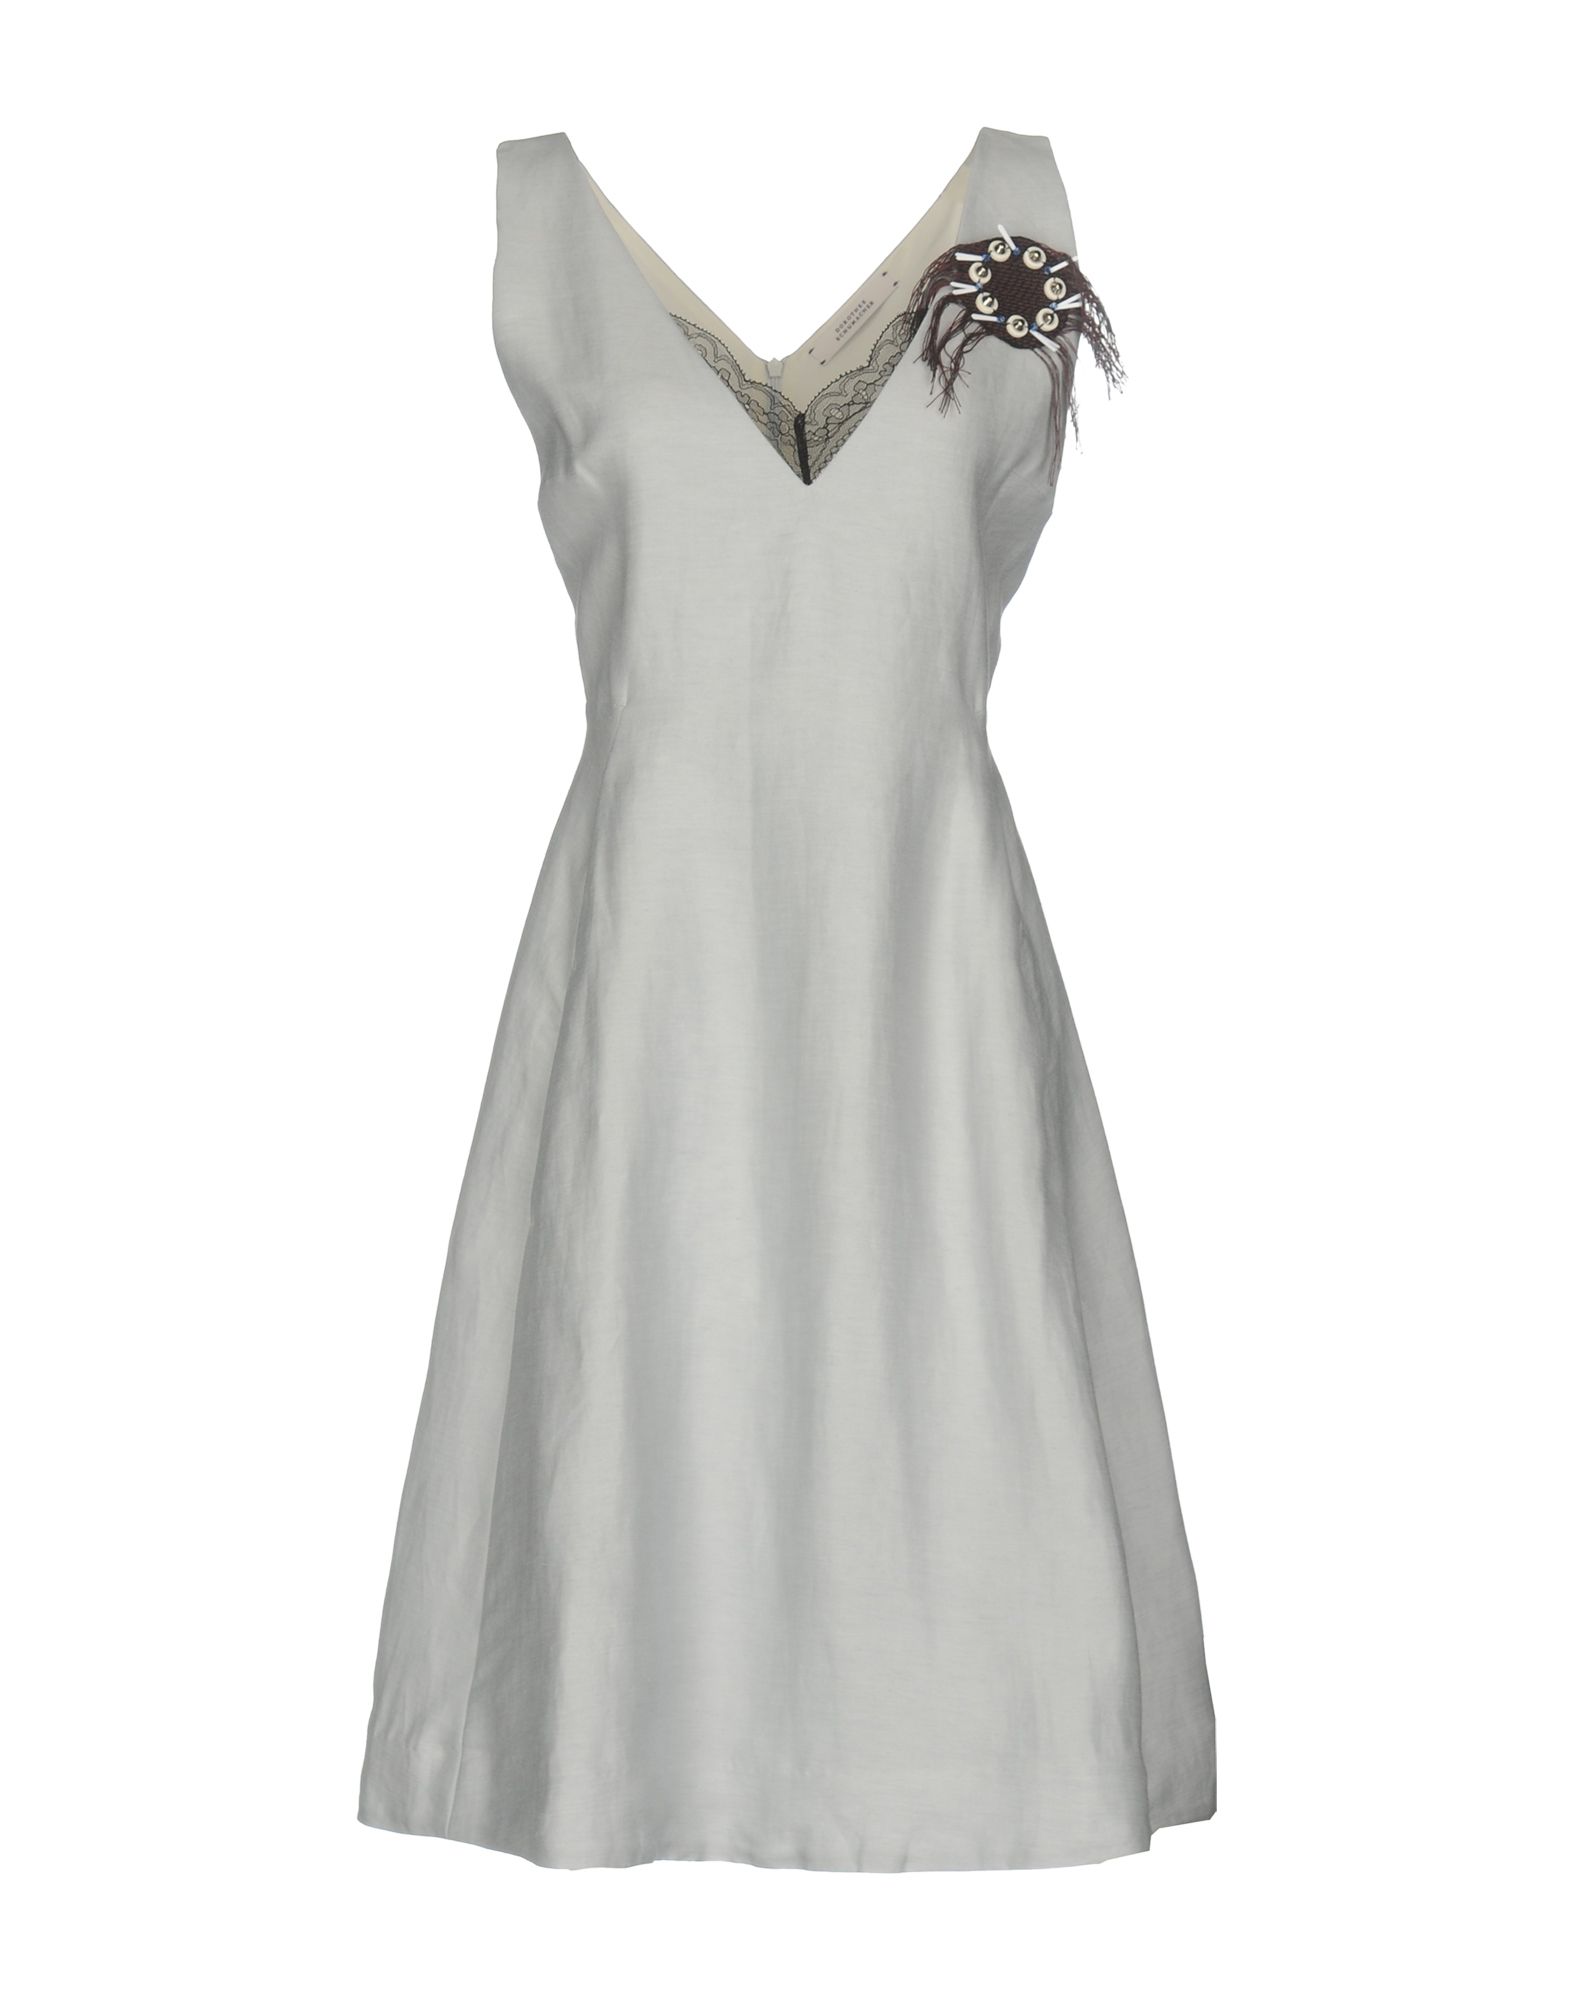 DOROTHEE SCHUMACHER Knee-length dress,34790128ND 7